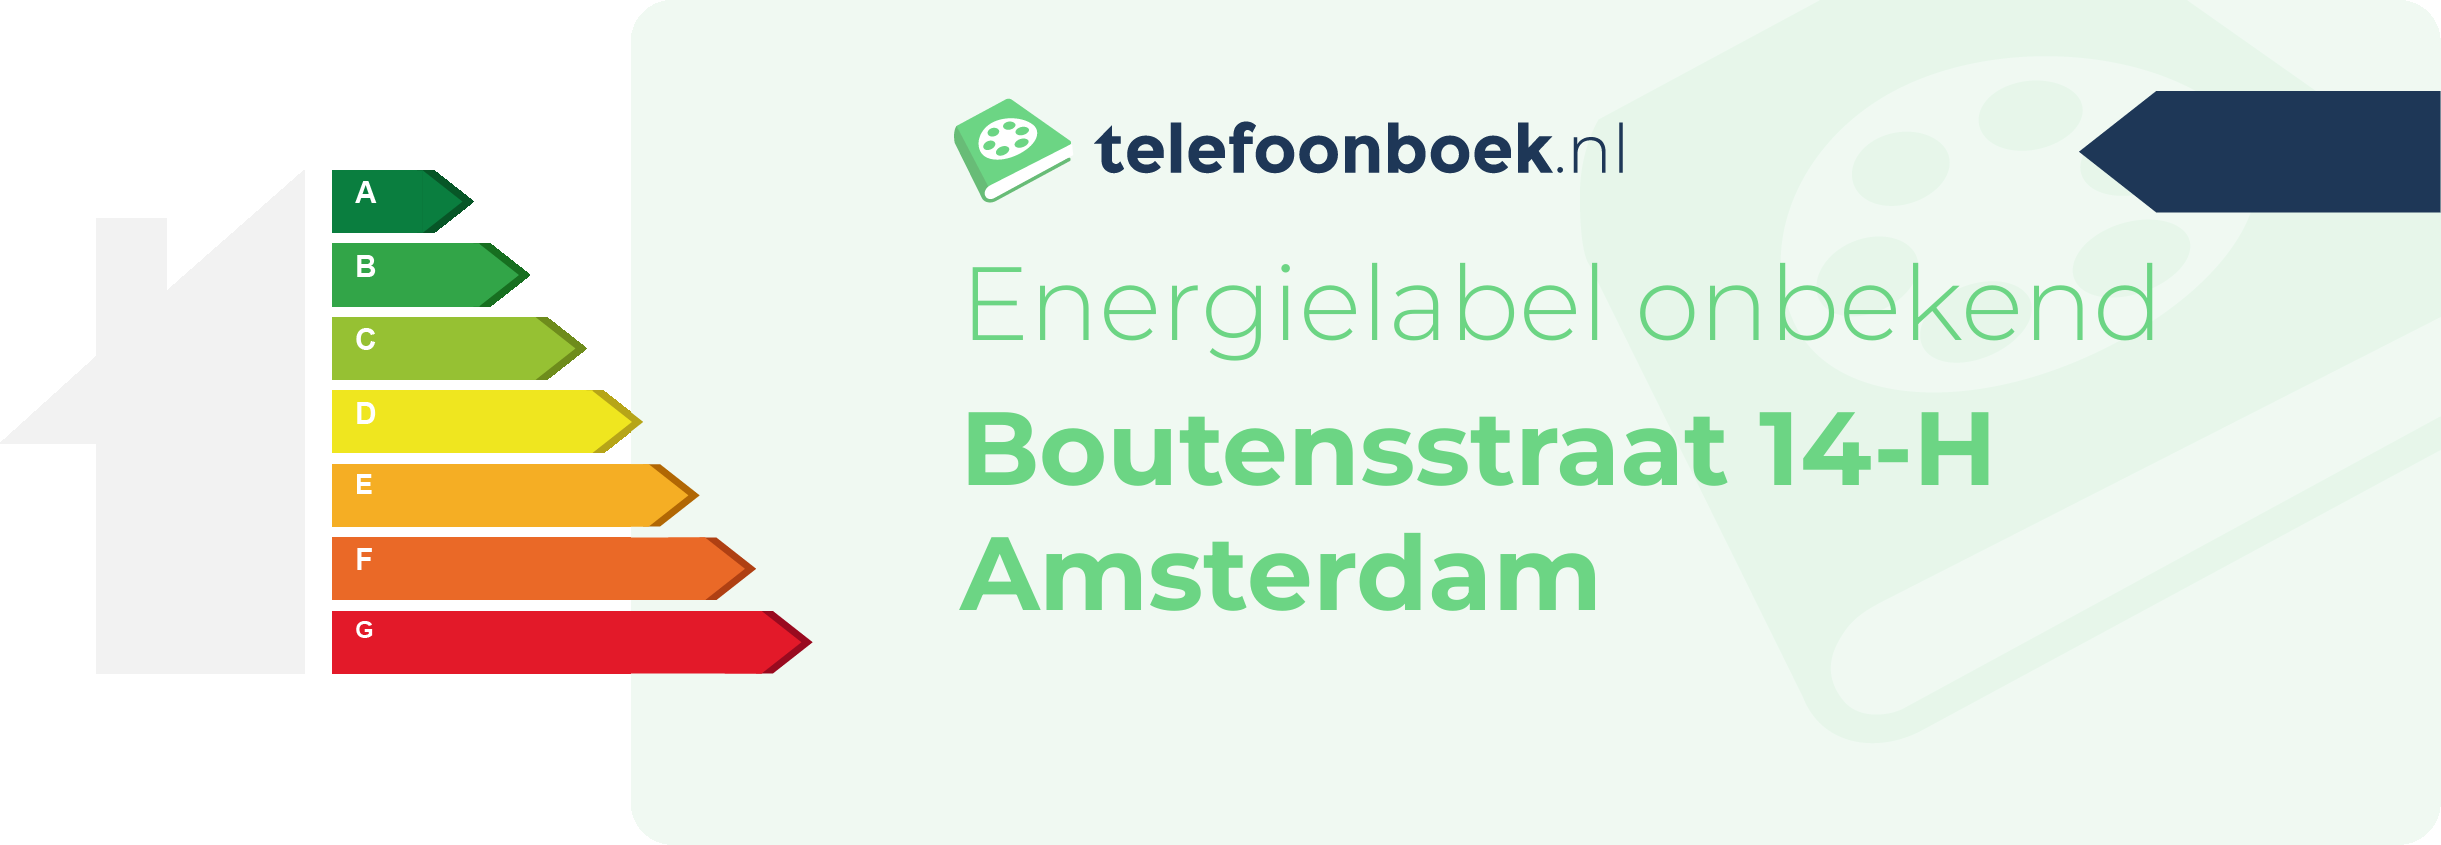 Energielabel Boutensstraat 14-H Amsterdam